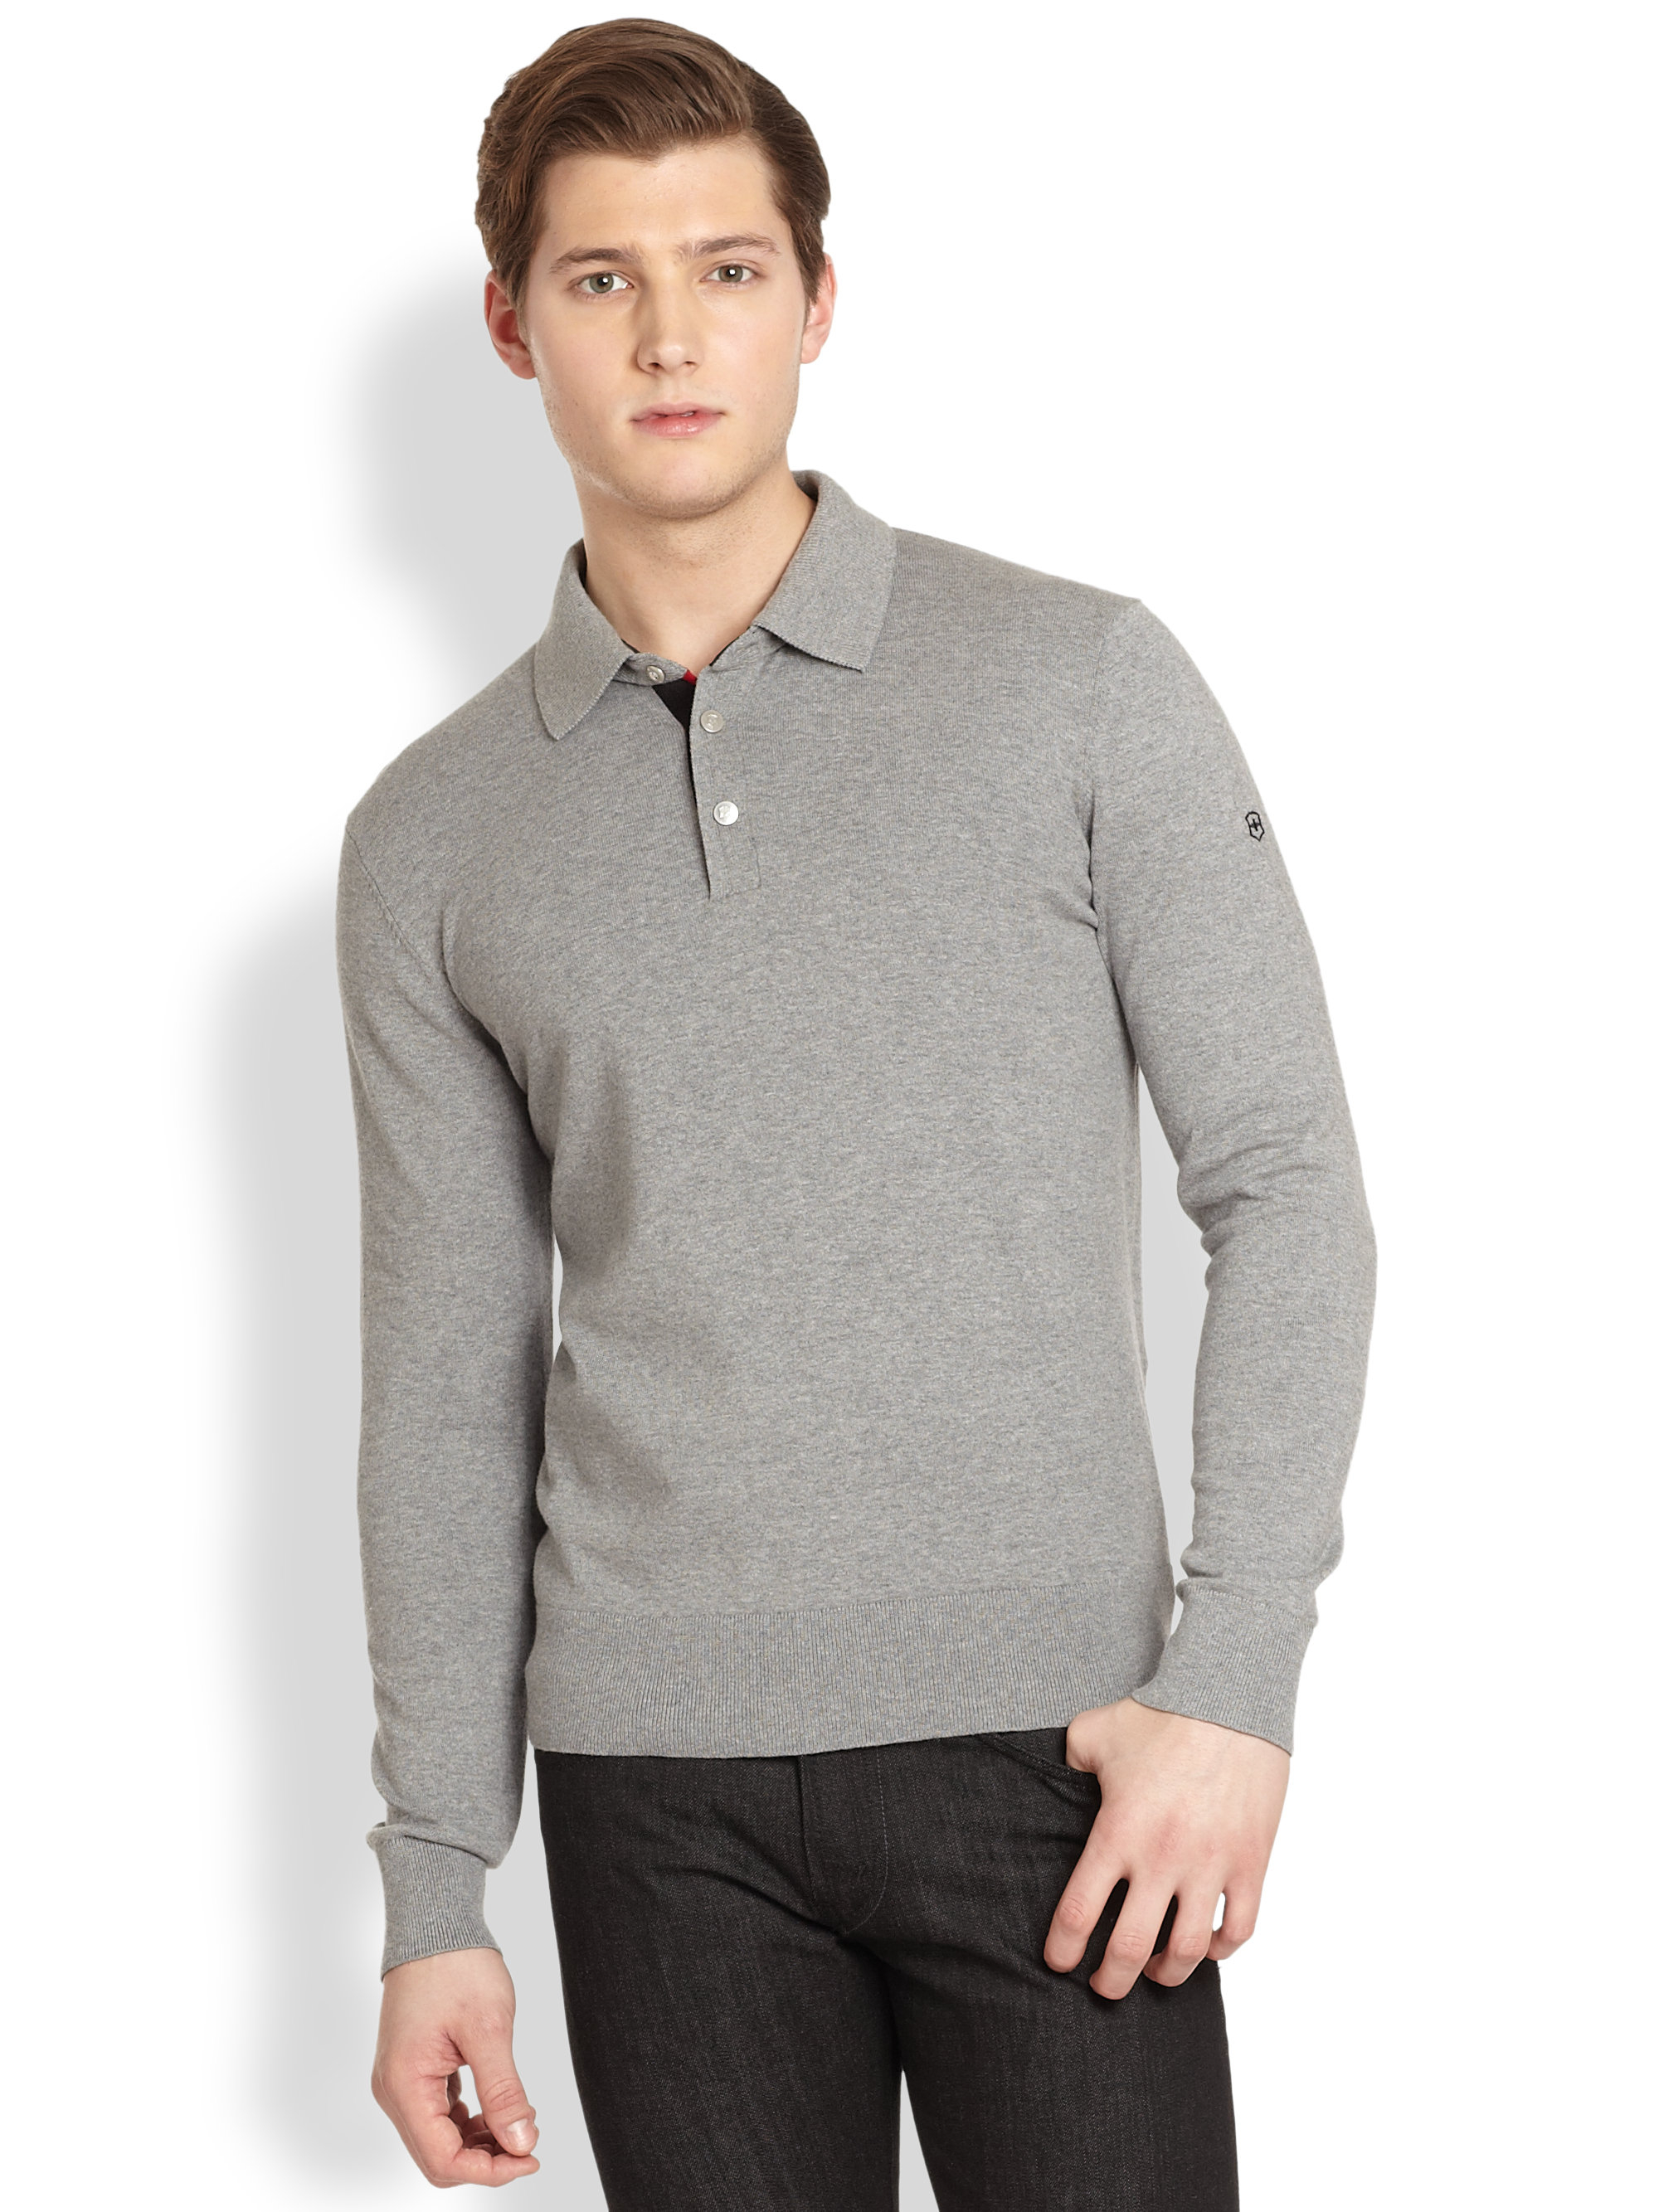 Port&Lotus Men Sweater Pure Color 100% Cotton Mens Brand